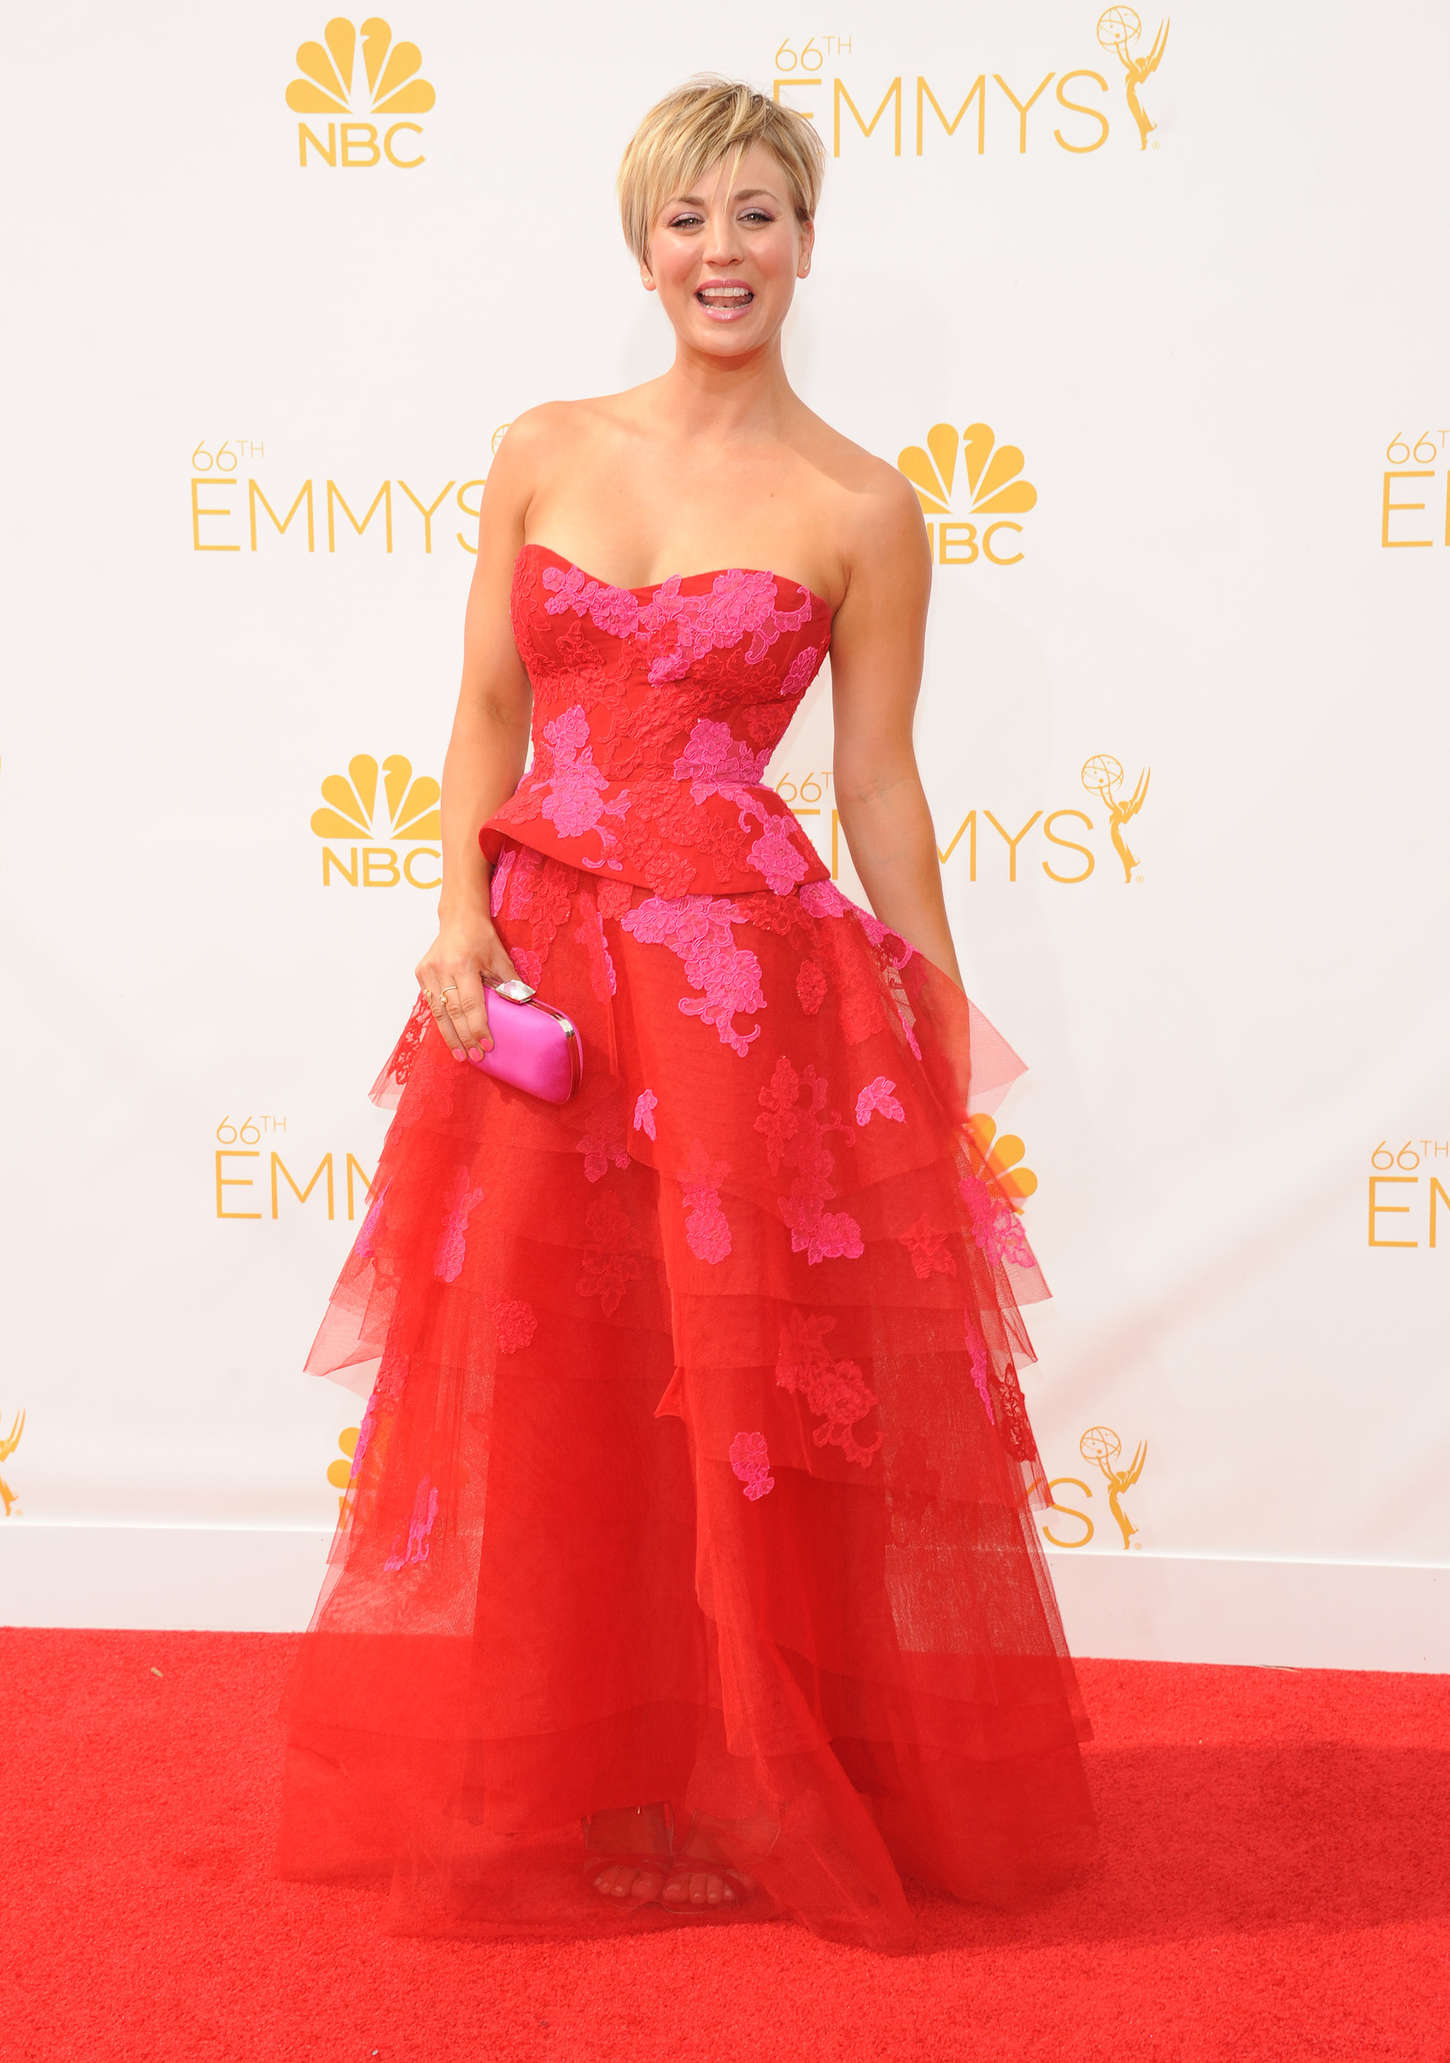 Kaley Cuoco - 66th annual Primetime Emmy Awards in LA